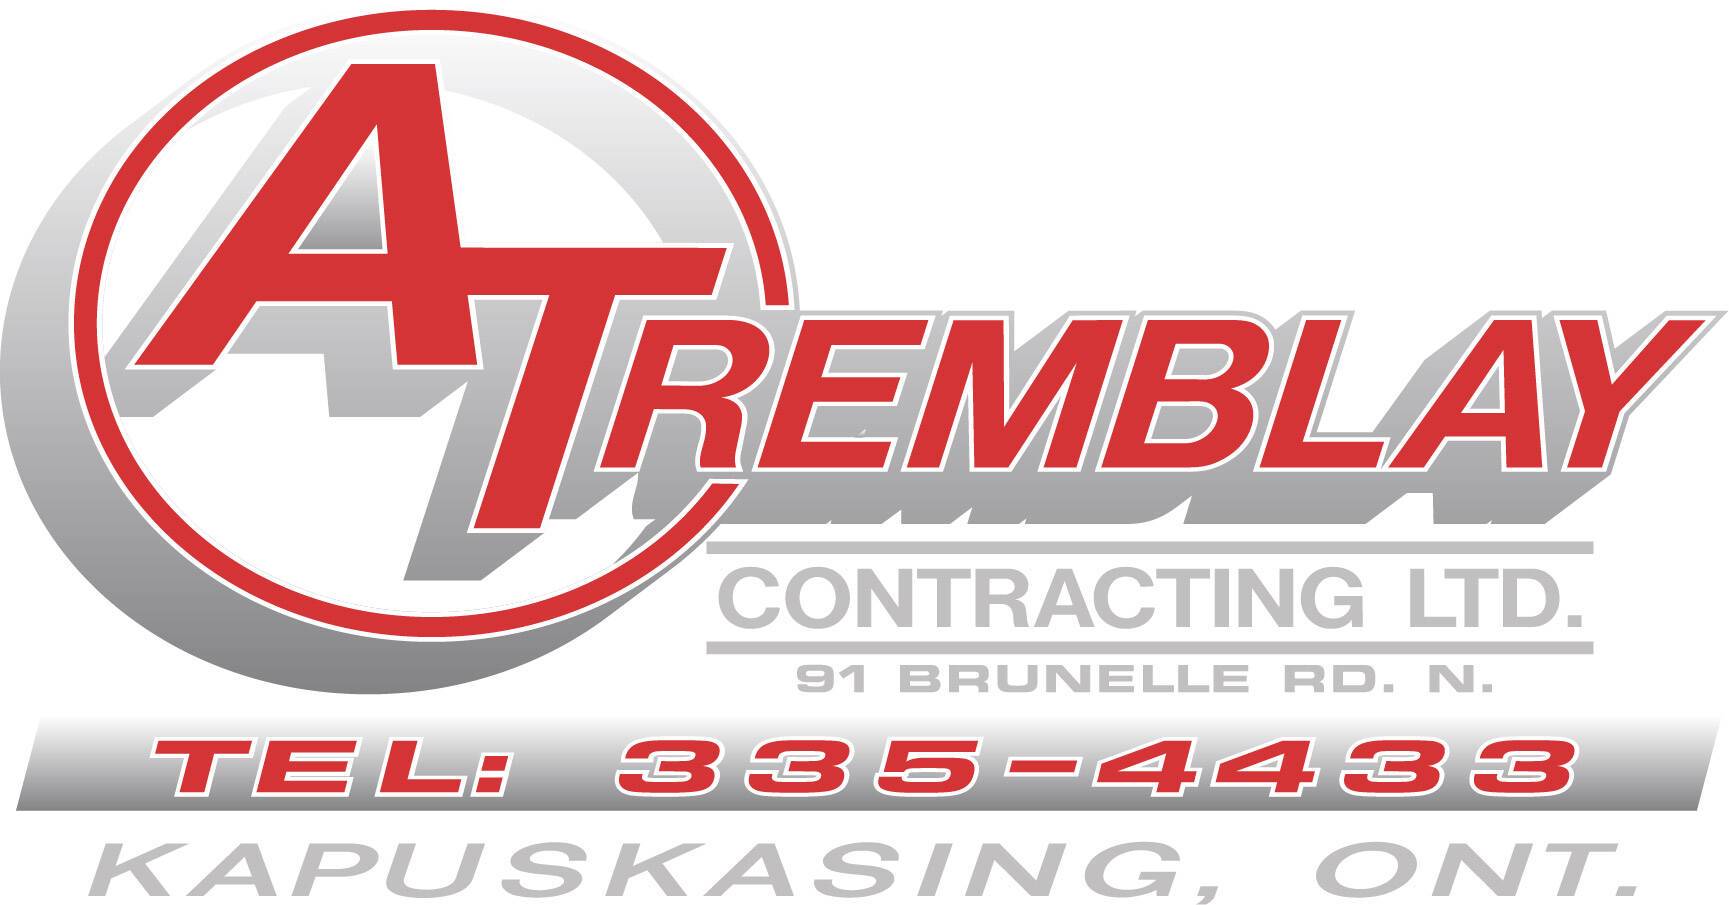 A. Tremblay Contracting Ltd.